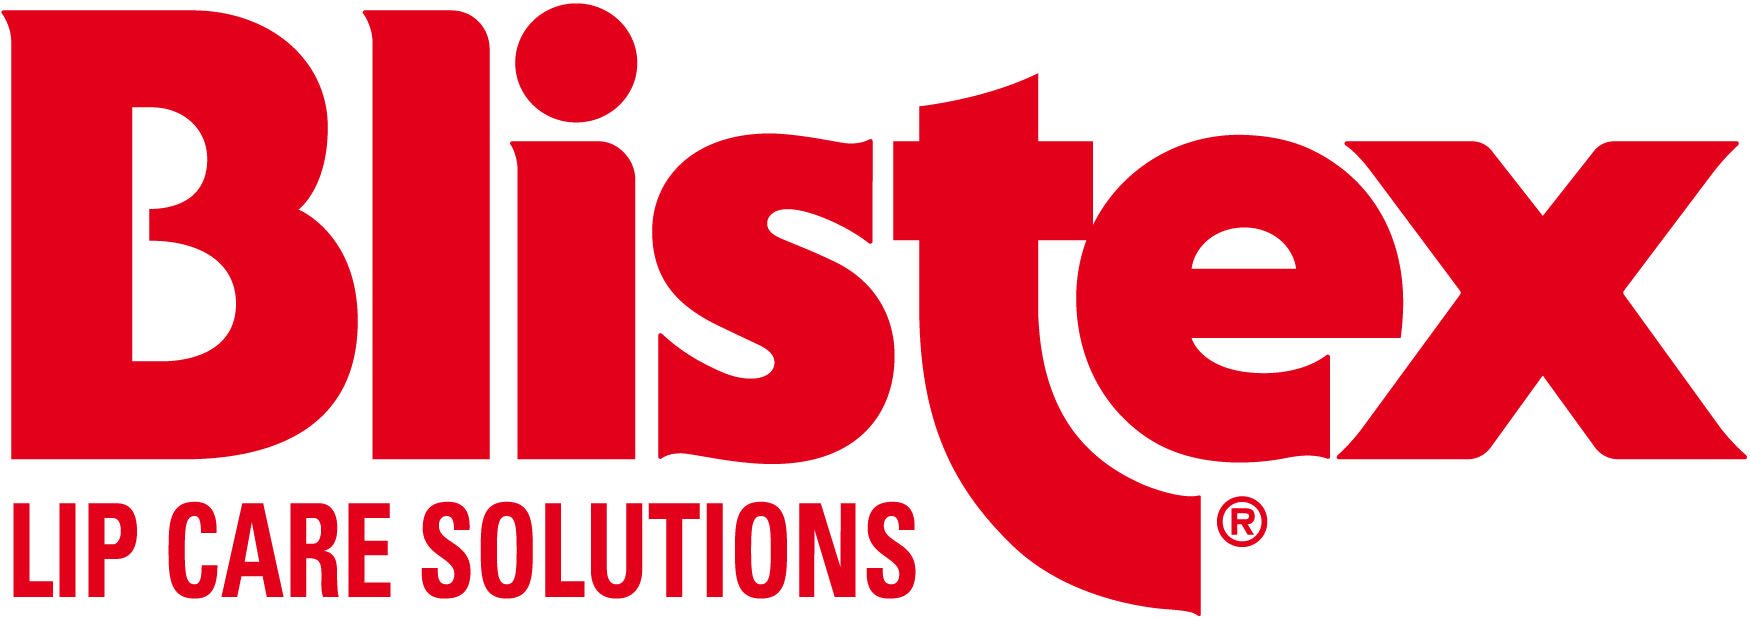 nuovo-Logo-Blistex-Lip-care-Solutions